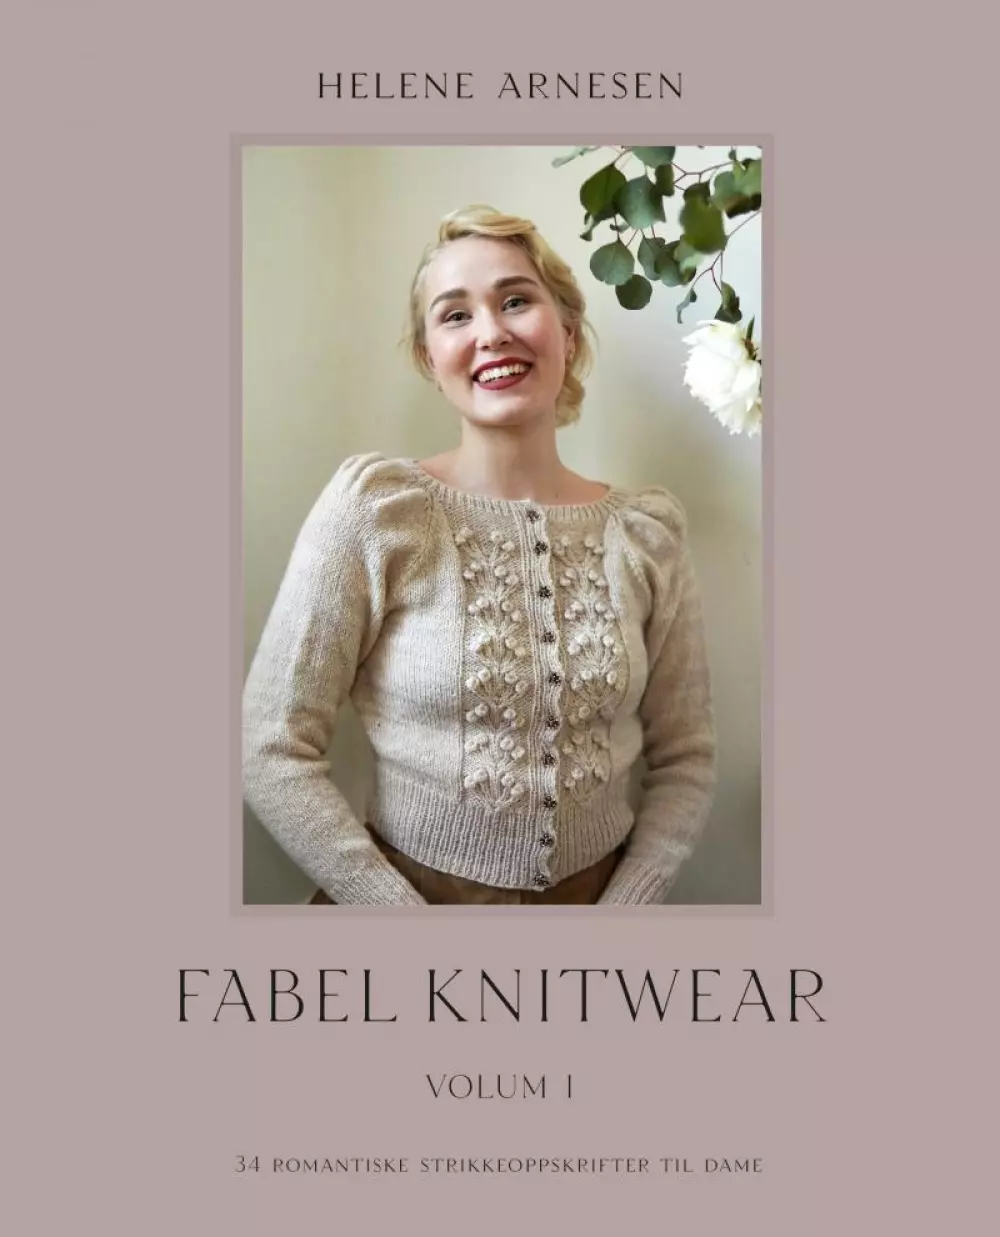 Fabel knitwear (strikk)